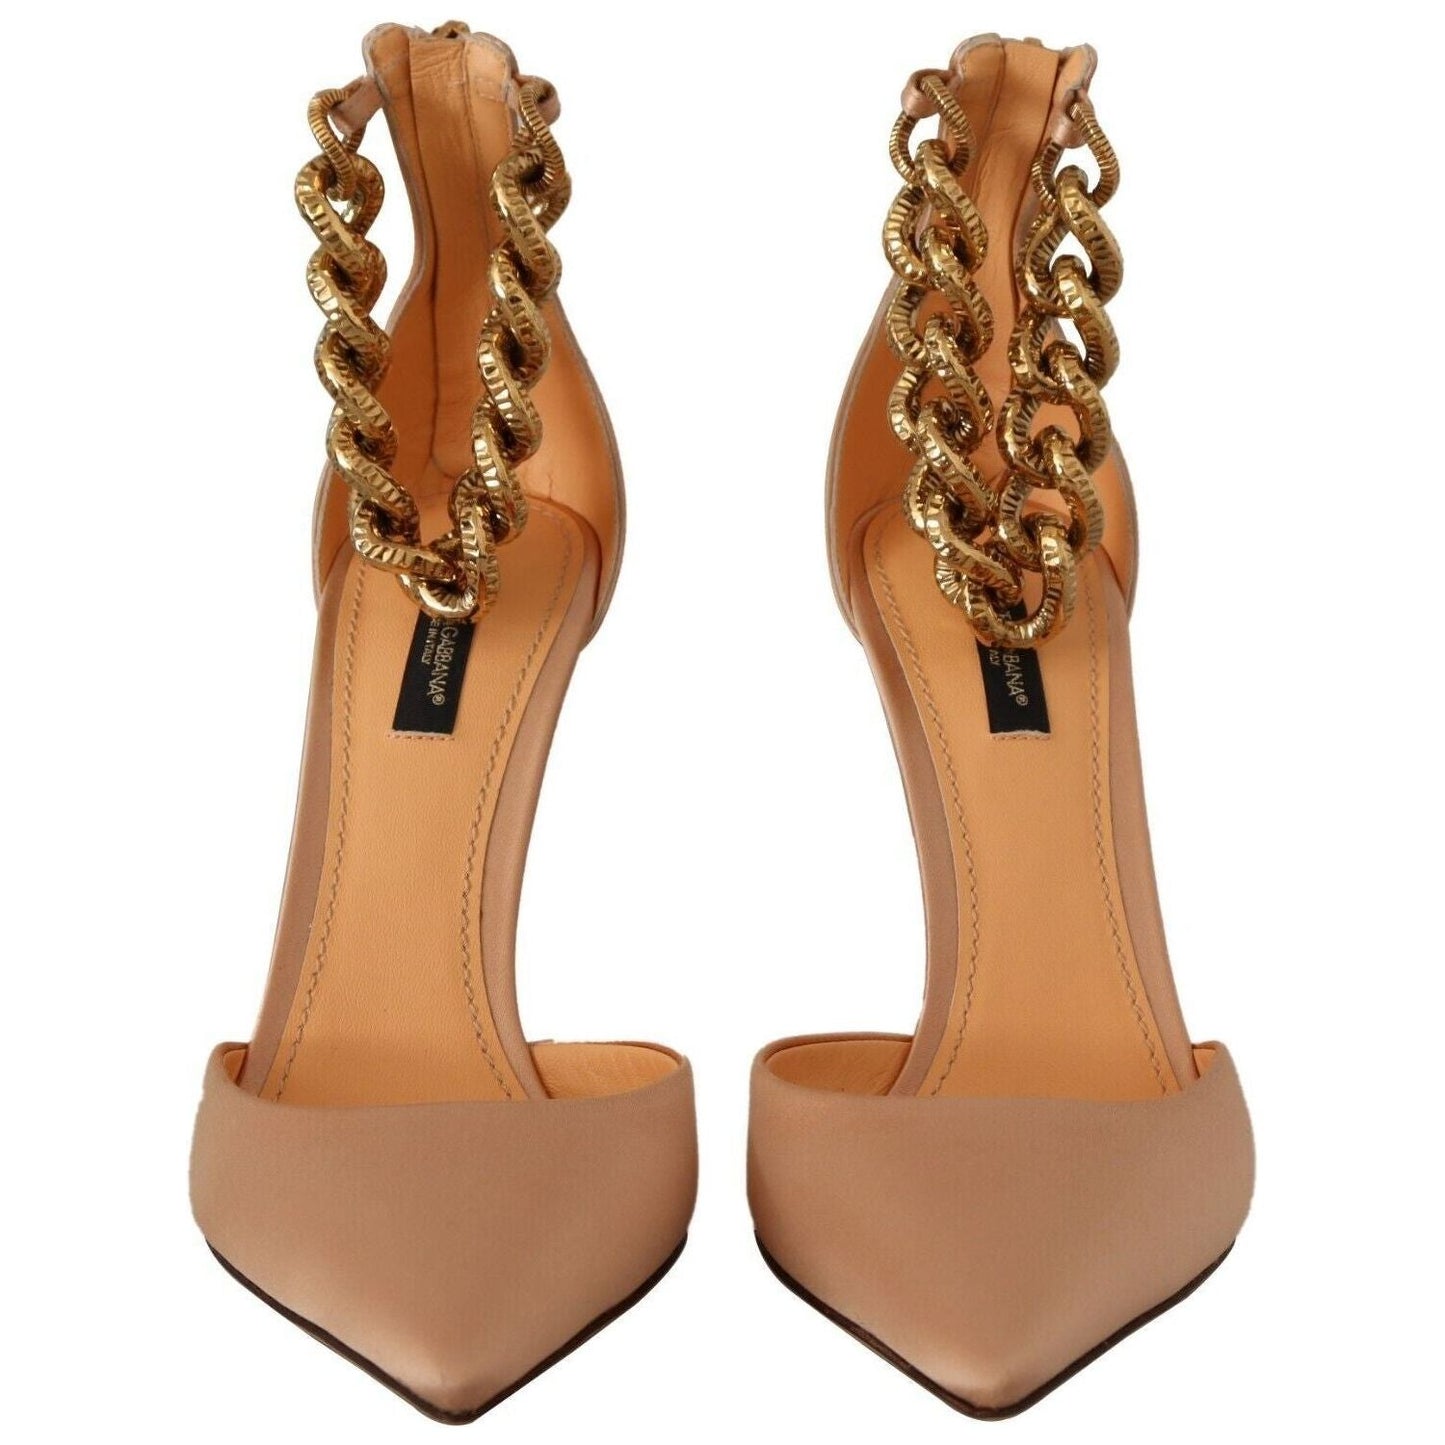 Dolce & Gabbana Elegant Beige Silk Ankle Strap Pumps beige-ankle-chain-strap-high-heels-pumps-shoes s-l1600-2-202-59ae7f09-f01_fcfbbc26-b9e2-40db-ae0a-b27e10217a22.jpg